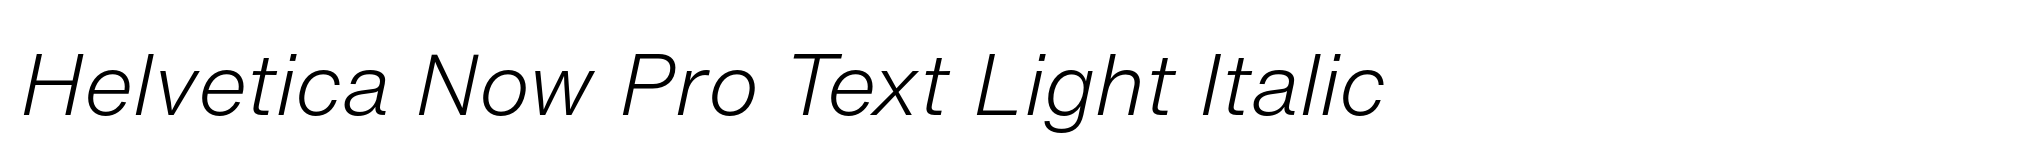 Helvetica Now Pro Text Light Italic image